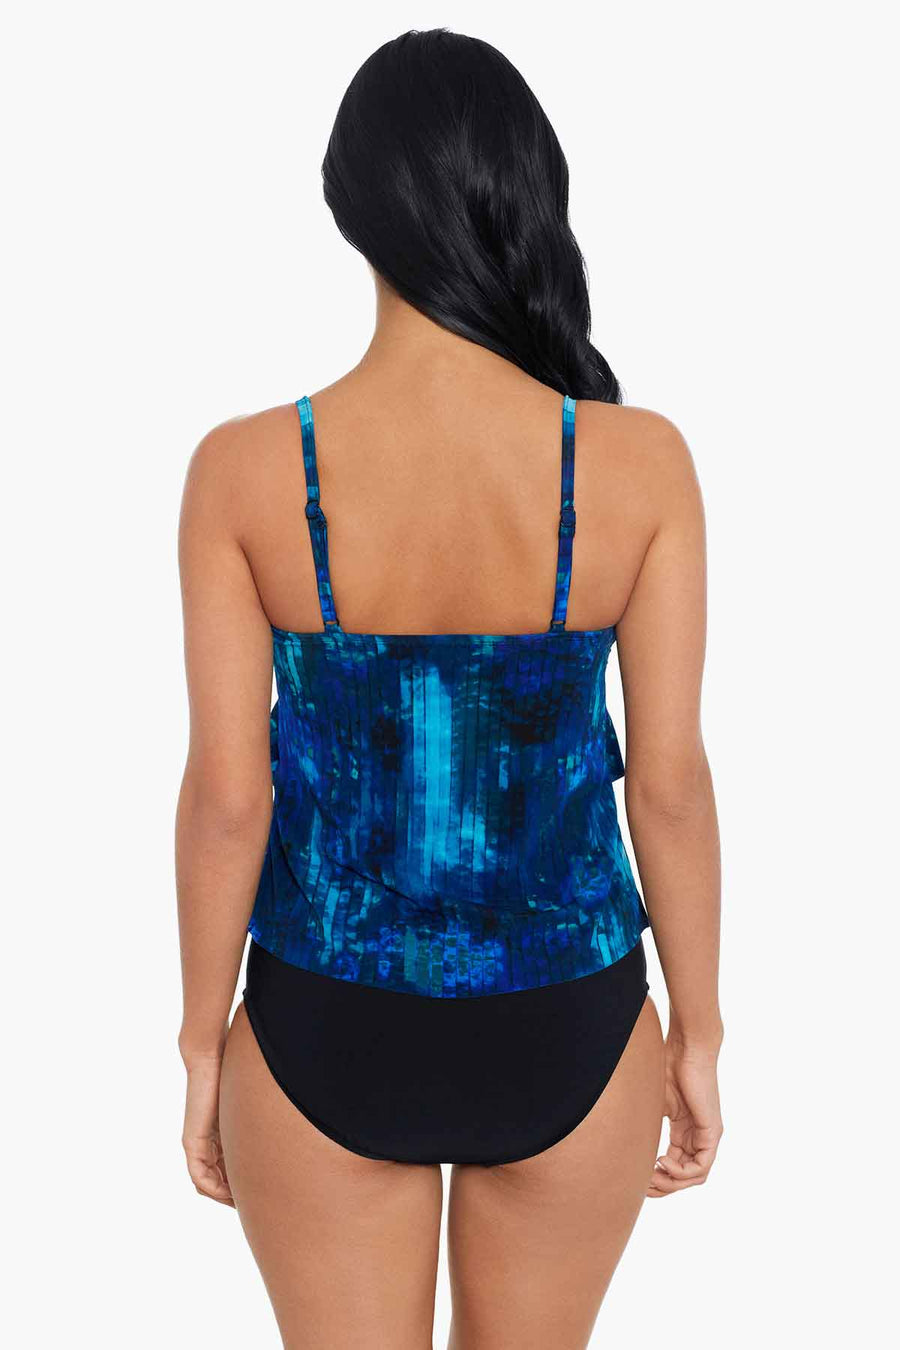 Sea Level Deco Underwire Bikini Top – Melmira Bra & Swimsuits